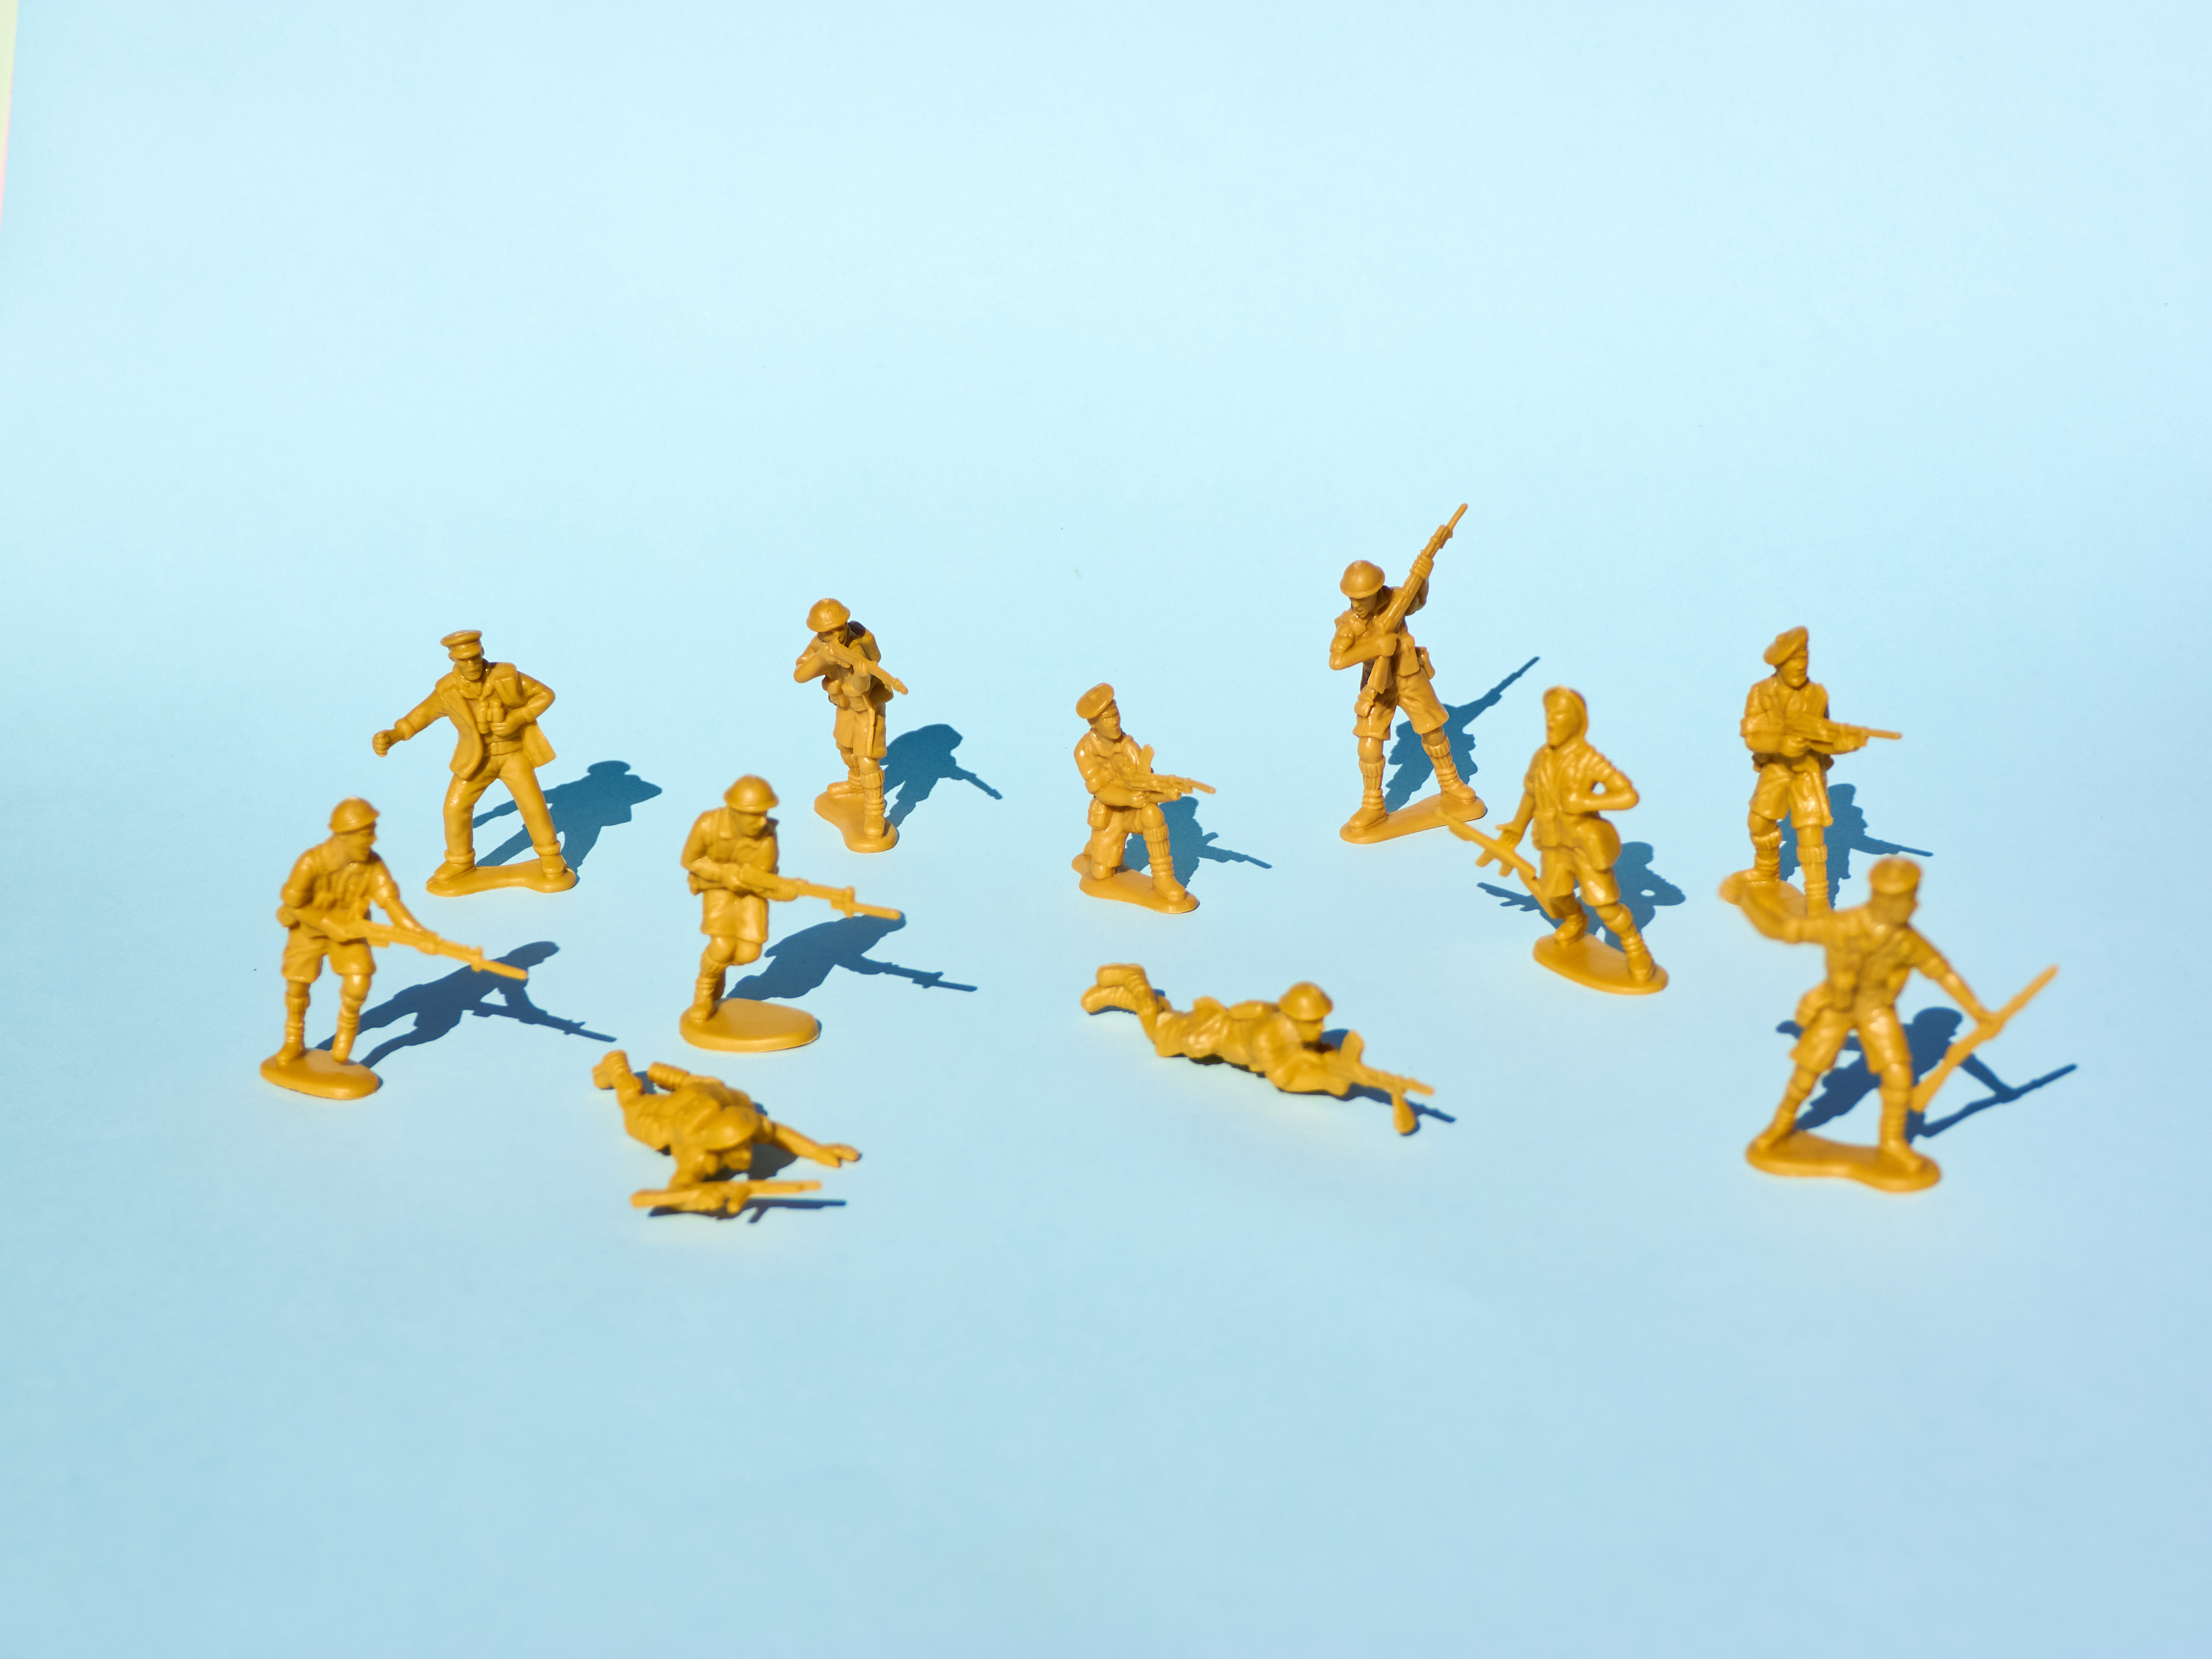 Imagen de un grupo de soldados de juguete de plástico amarillo apuntándose con armas sobre un fondo azul.